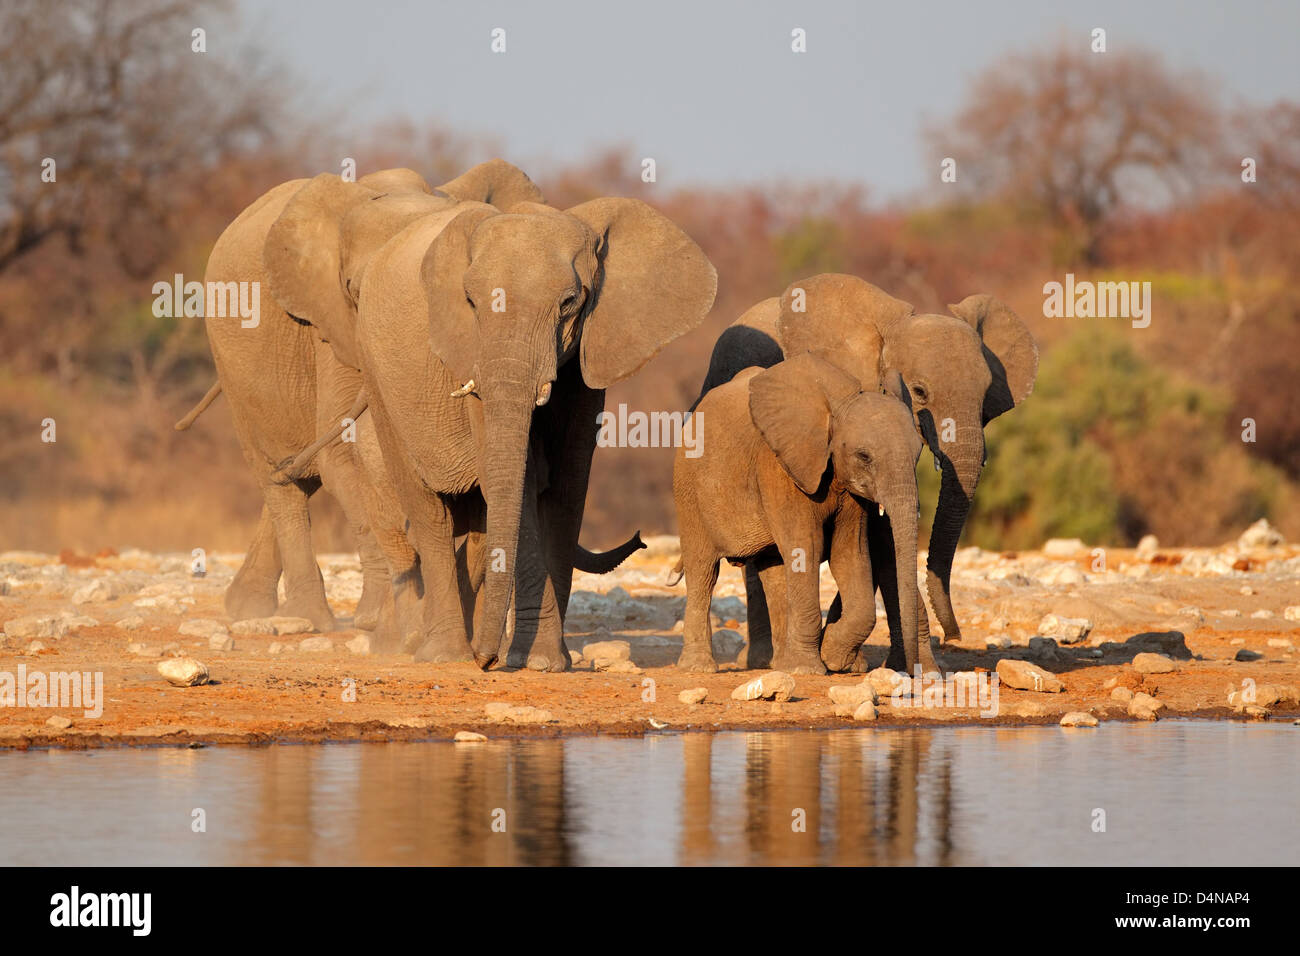 Les éléphants d'Afrique (Loxodonta africana) à un étang, Etosha National Park, Namibie Banque D'Images